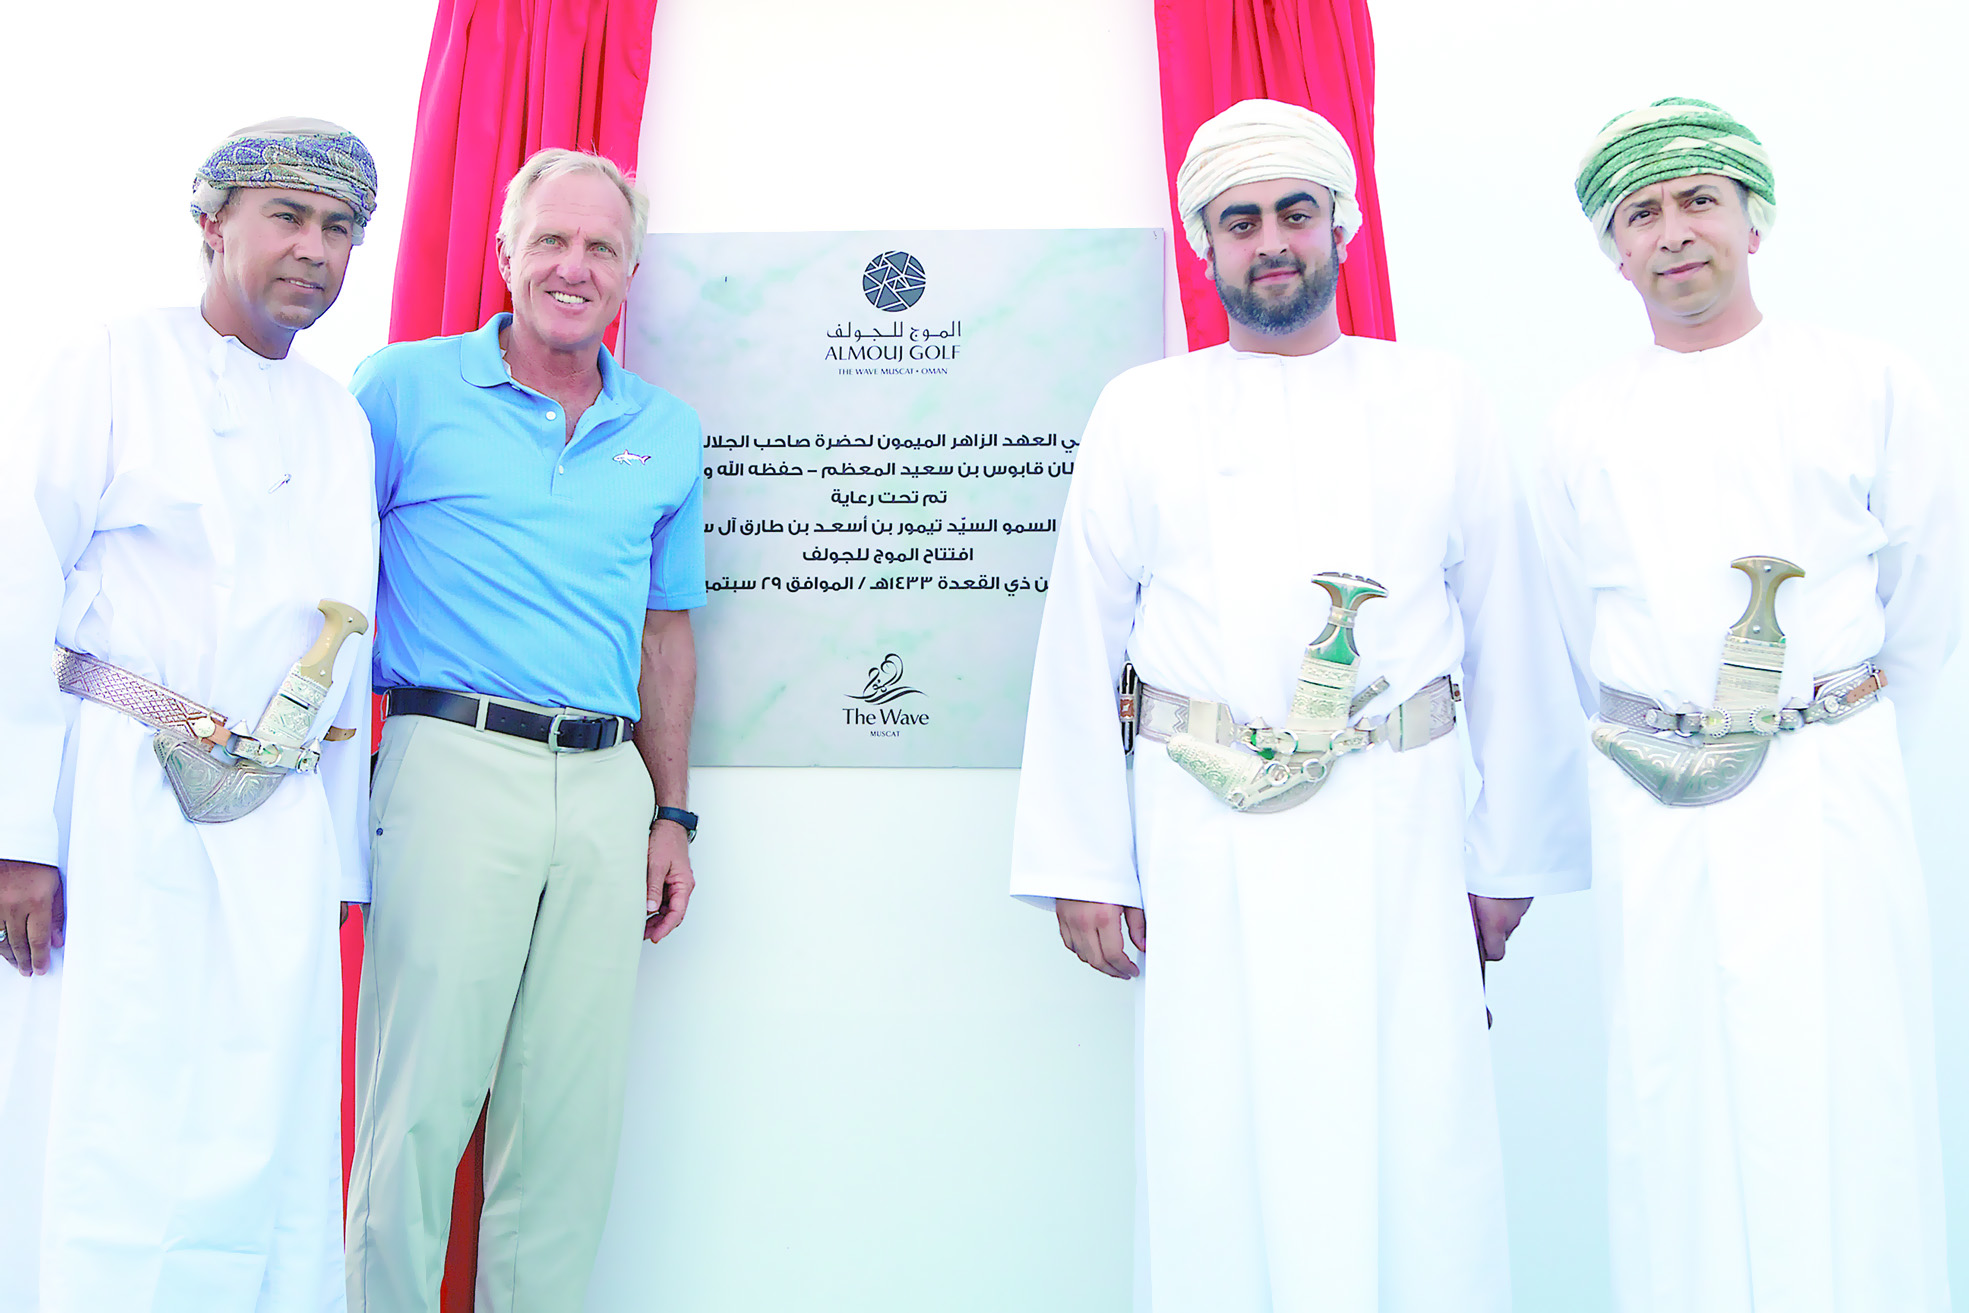 بطولة عمان المفتوحة على الأبواب
أسطورة الجولف نورمان يُشيد بملعب "الموج"